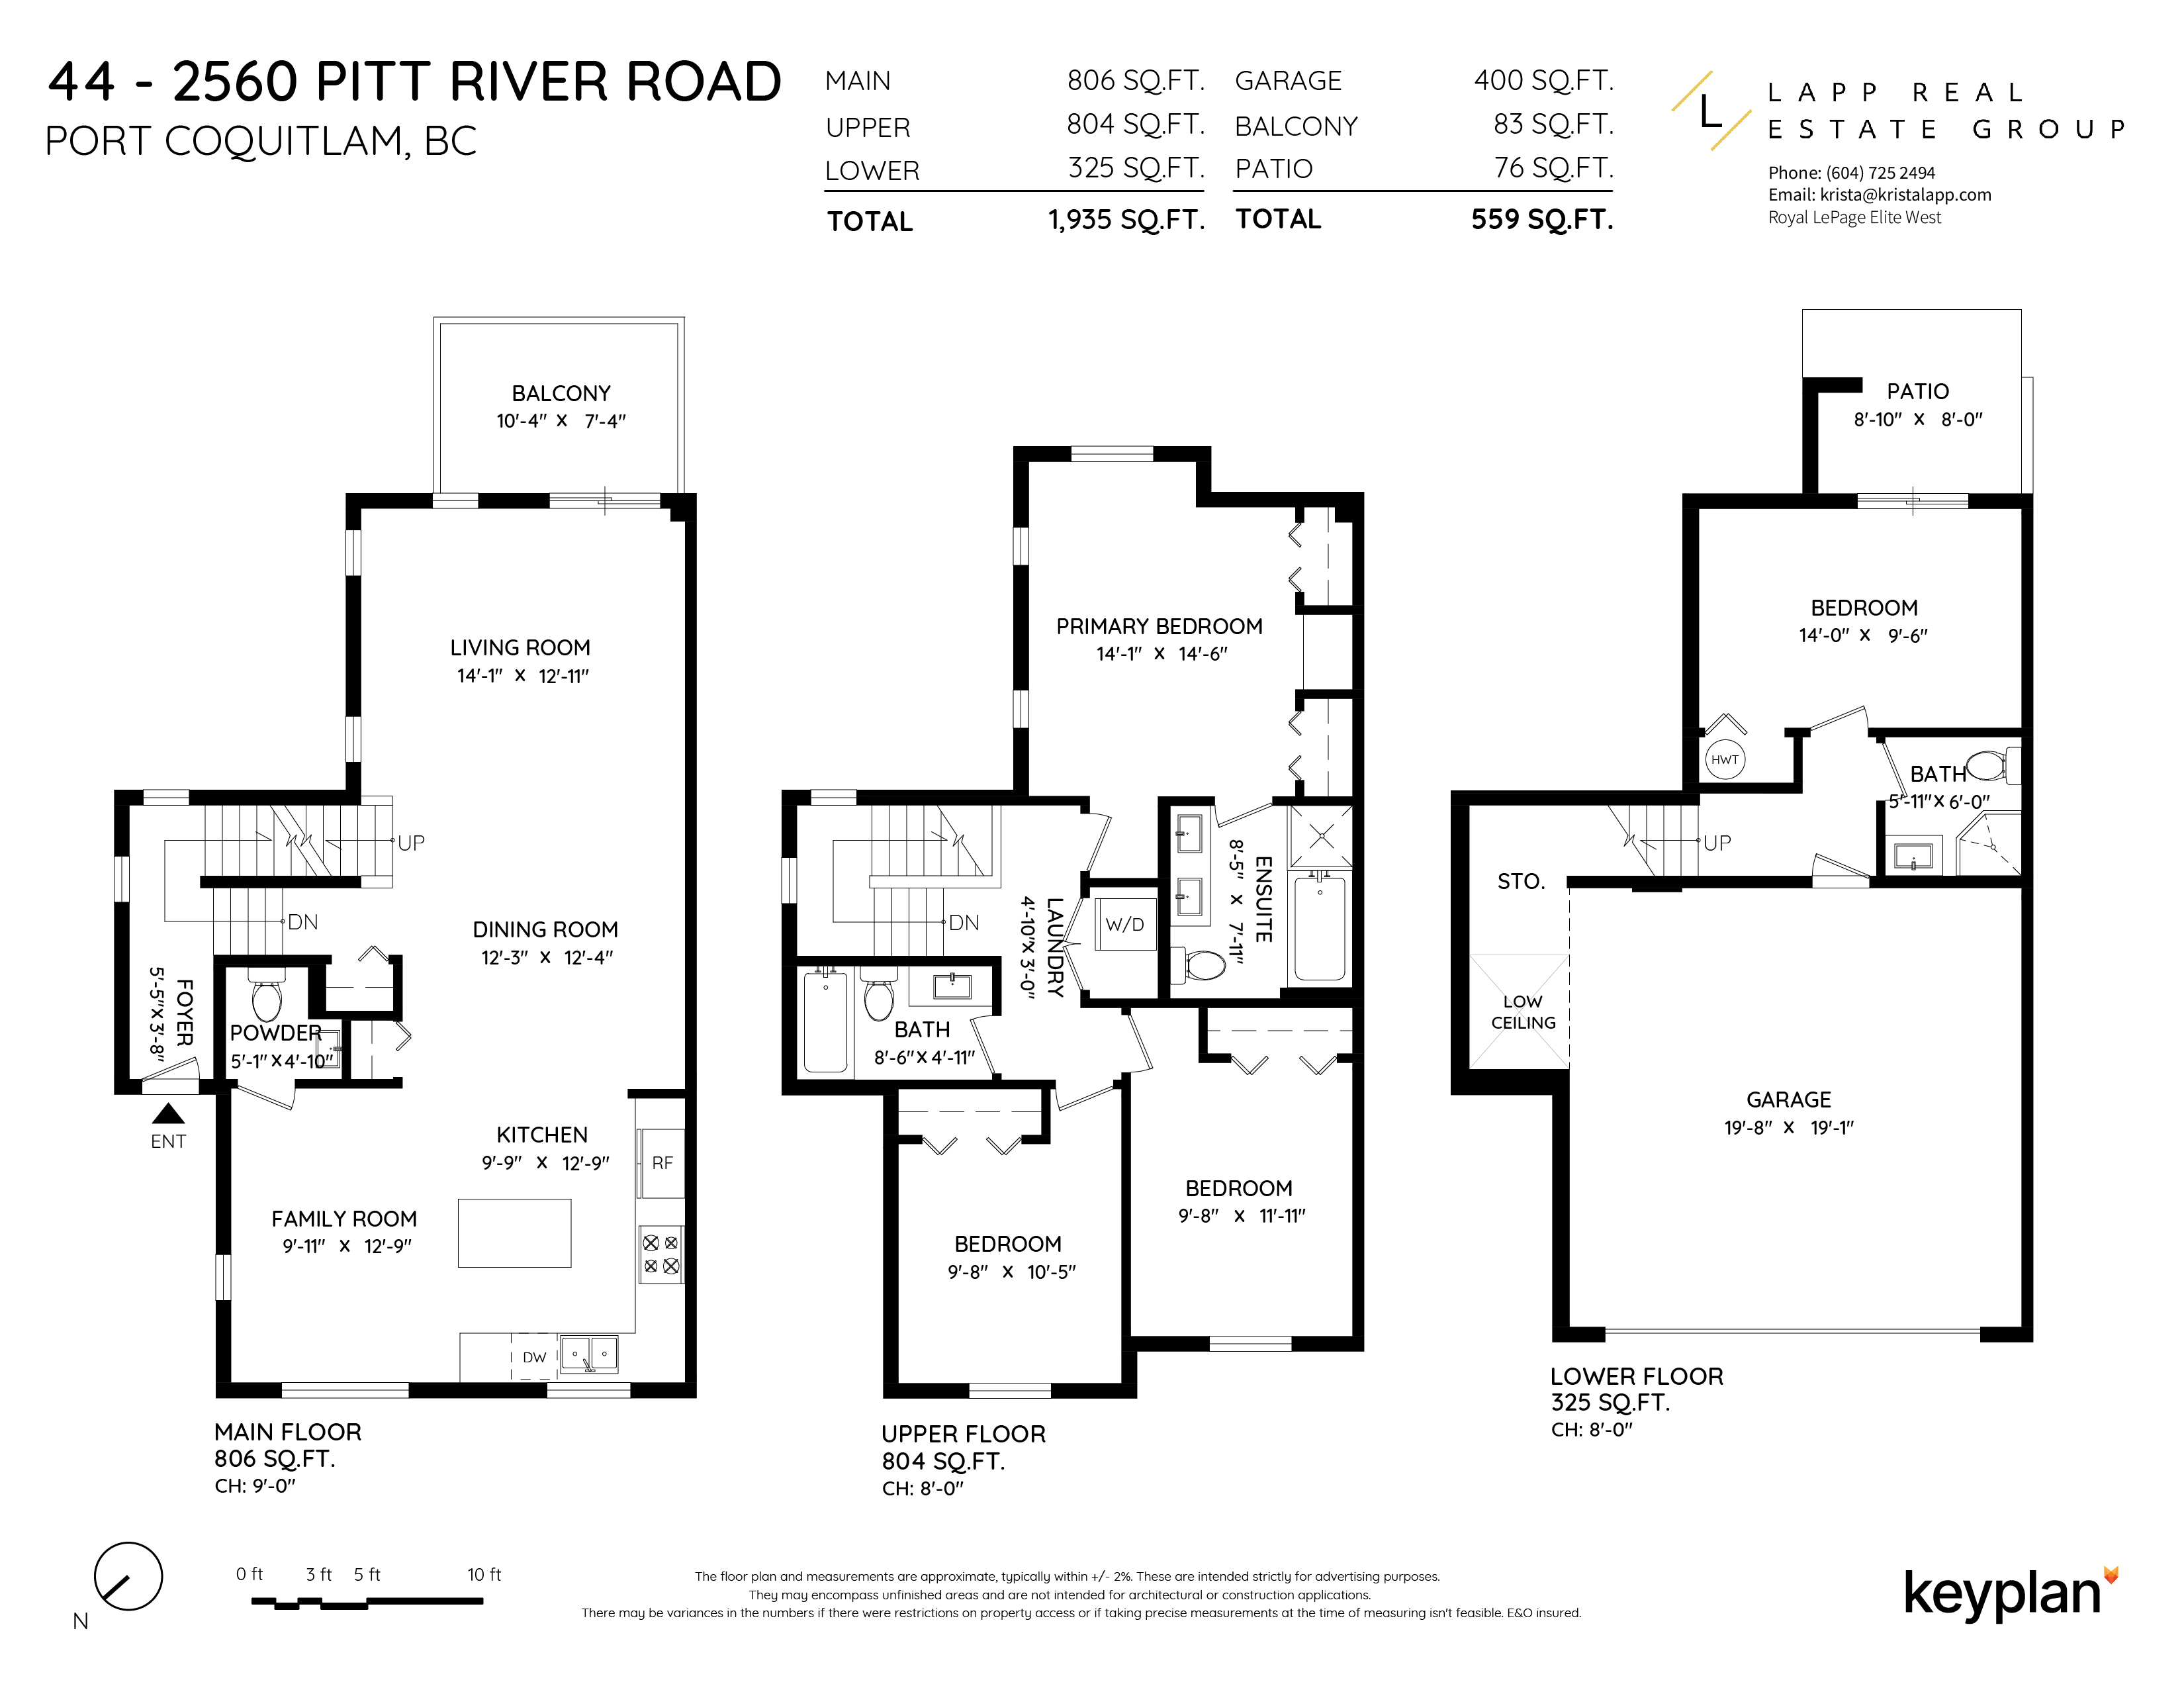 Krista Lapp - Unit 44 - 2560 Pitt River Road, Port Coquitlam, BC, Canada | Floor Plan 1